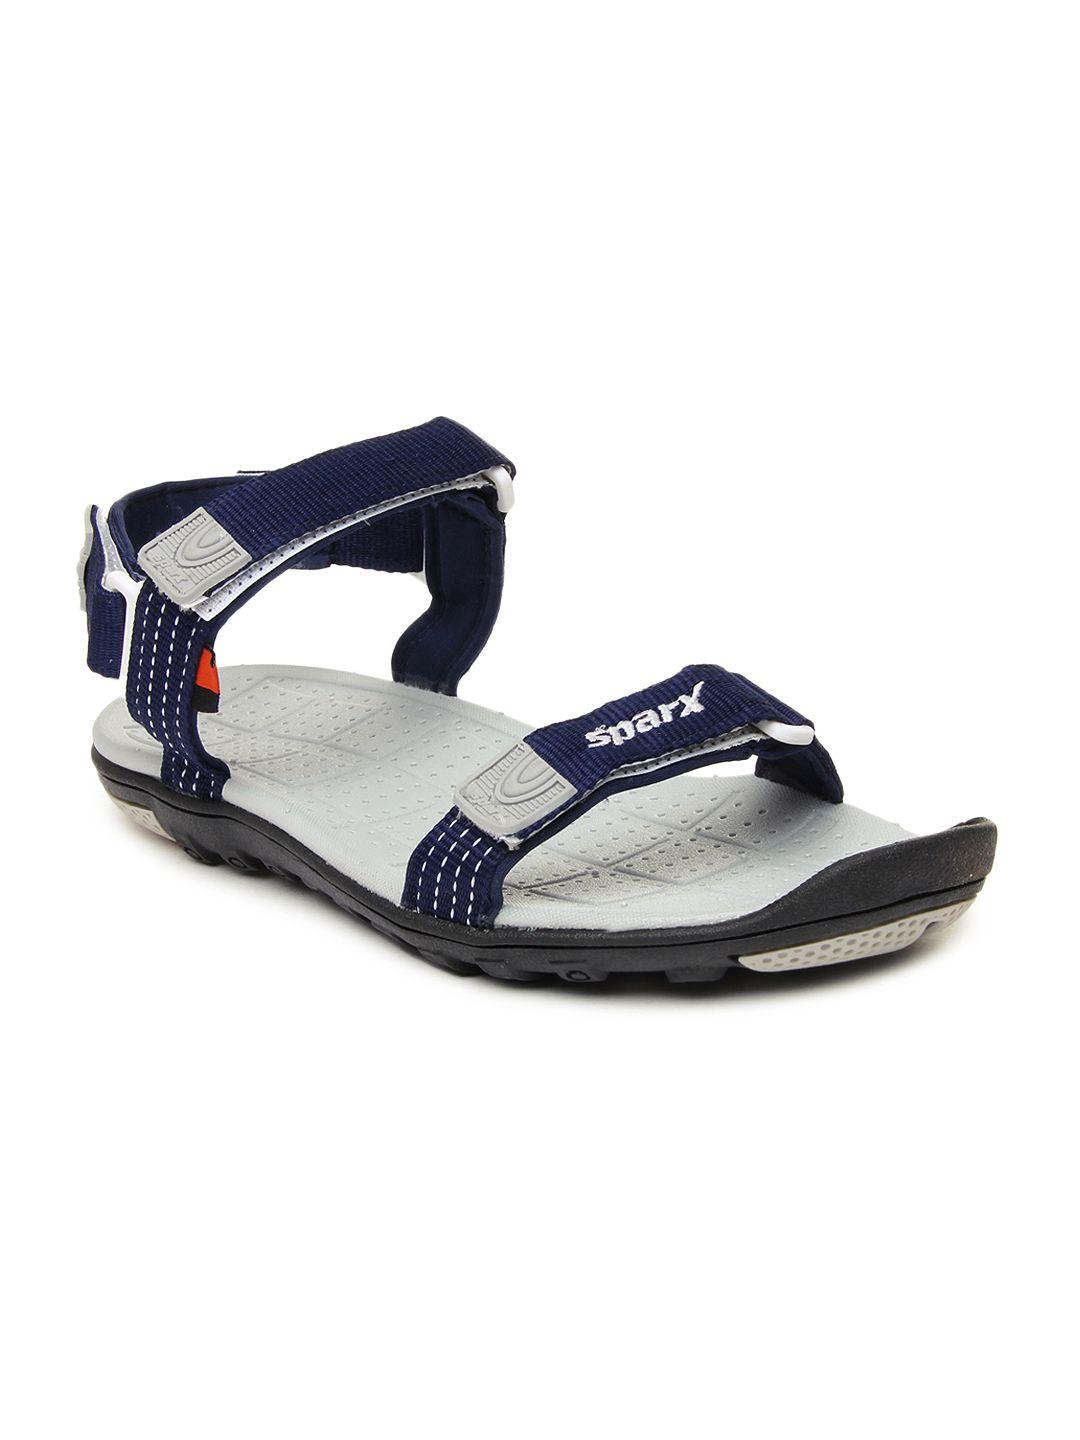 sparx men blue sports sandals